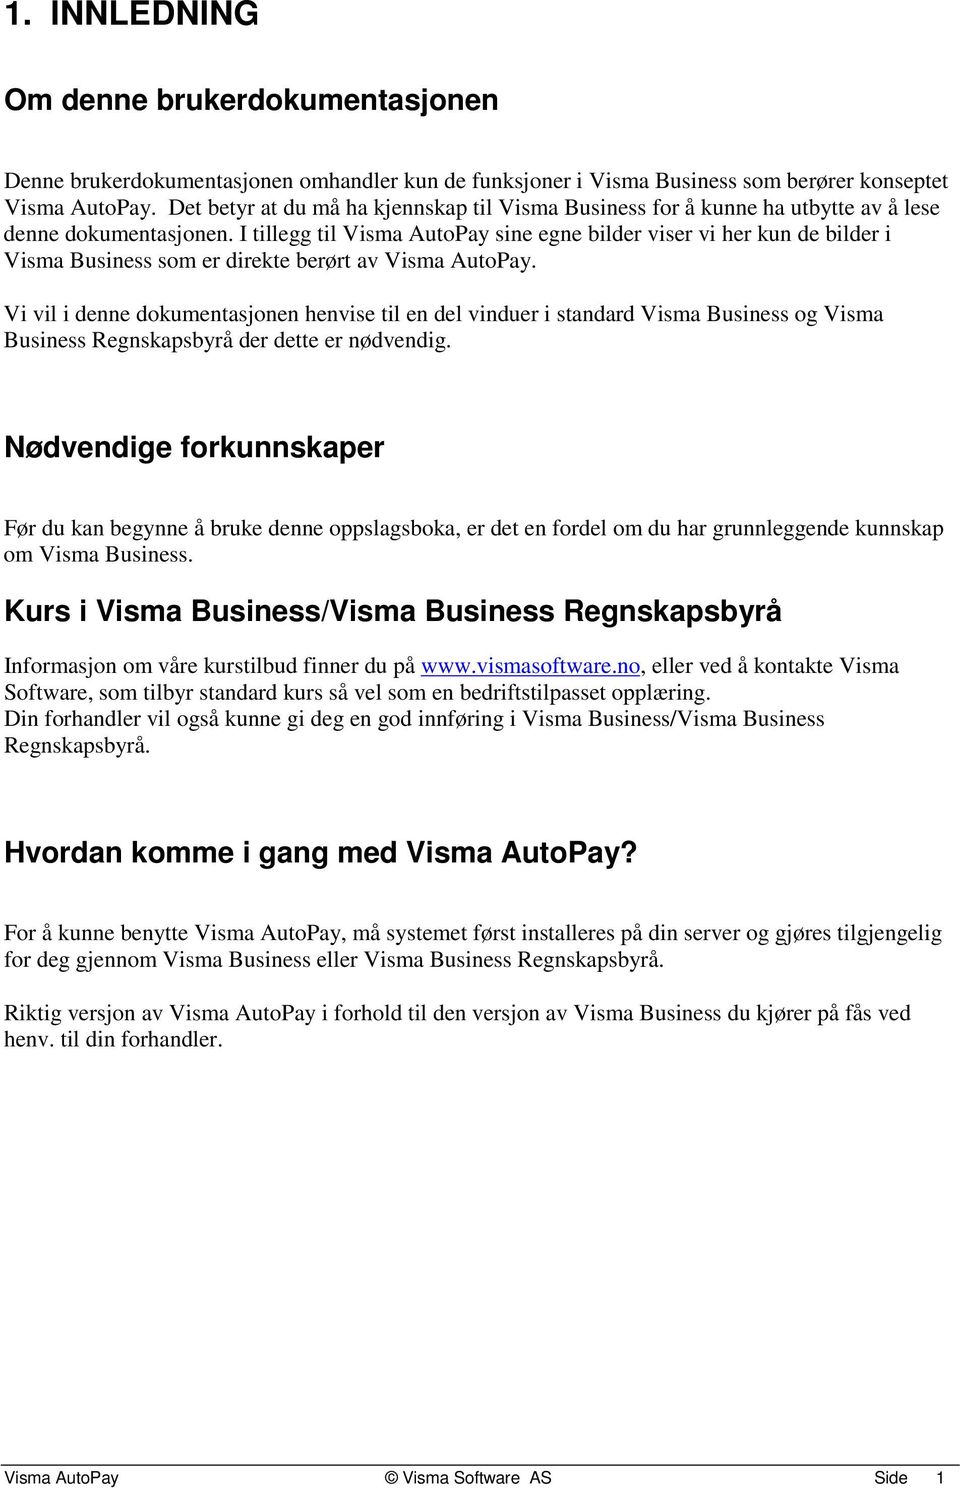 I tillegg til Visma AutoPay sine egne bilder viser vi her kun de bilder i Visma Business som er direkte berørt av Visma AutoPay.